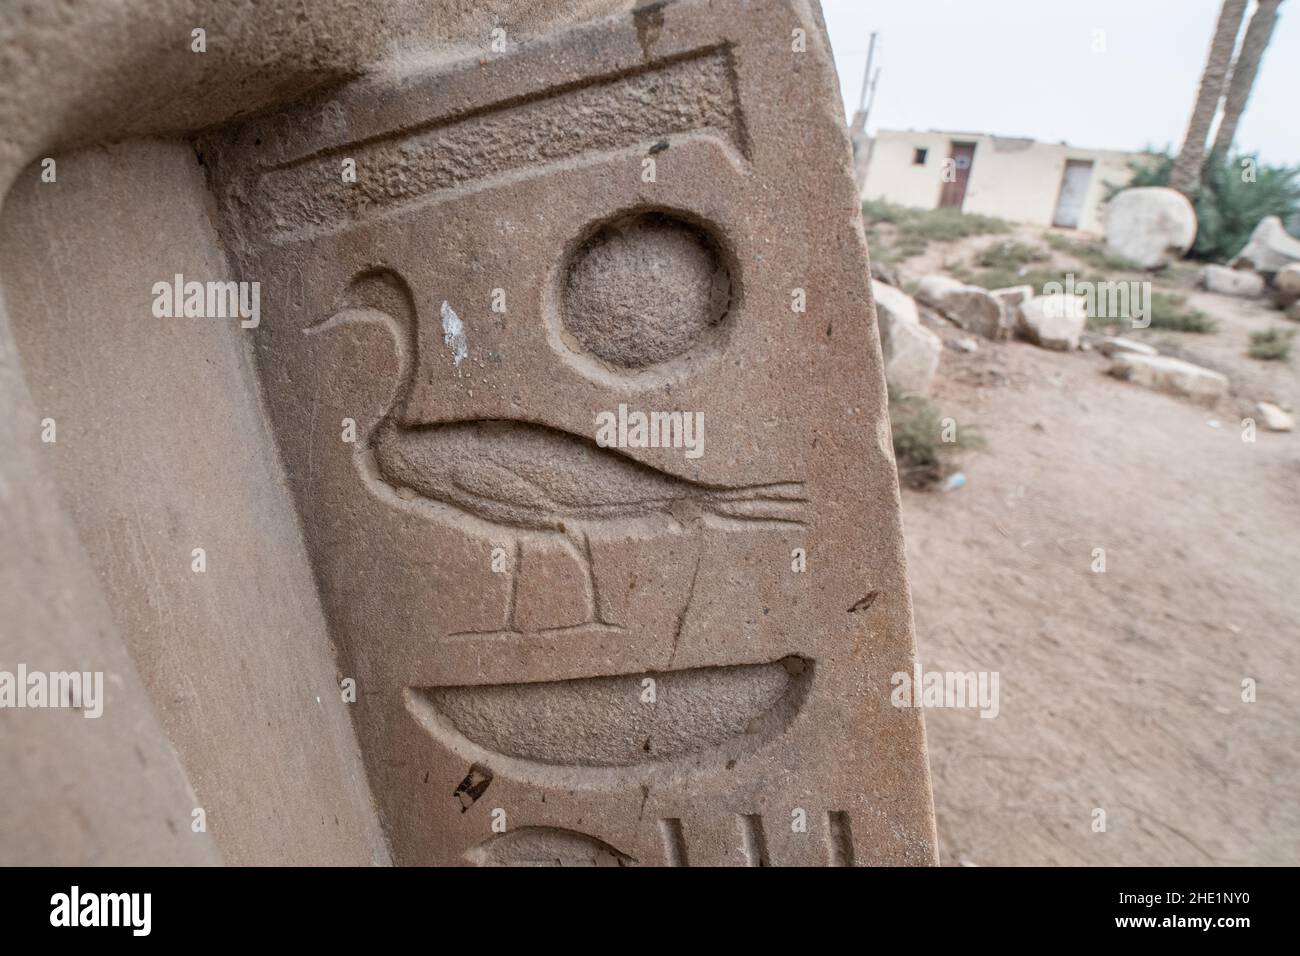 Un antiguo jeroglfo egipcio que representa un pato en una losa de piedra en Memphis, Egipto. Foto de stock